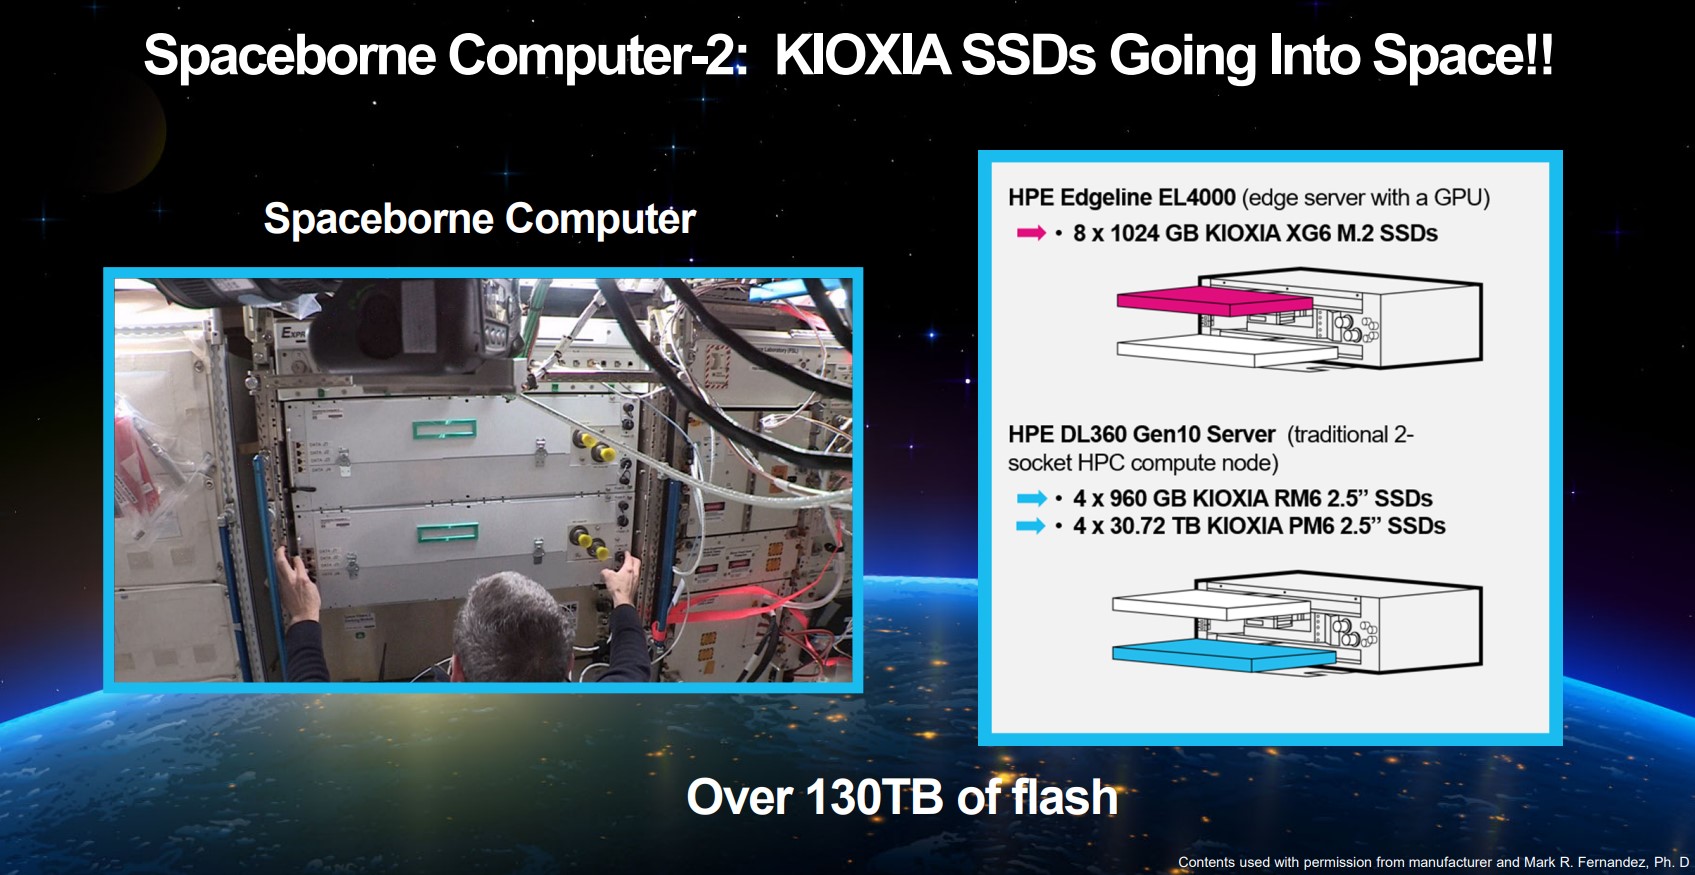 Spaceborne Computer-2, HPE tarafından 310 TB'ın üzerinde Kioxia SSD'leri kullanılarak üretildi